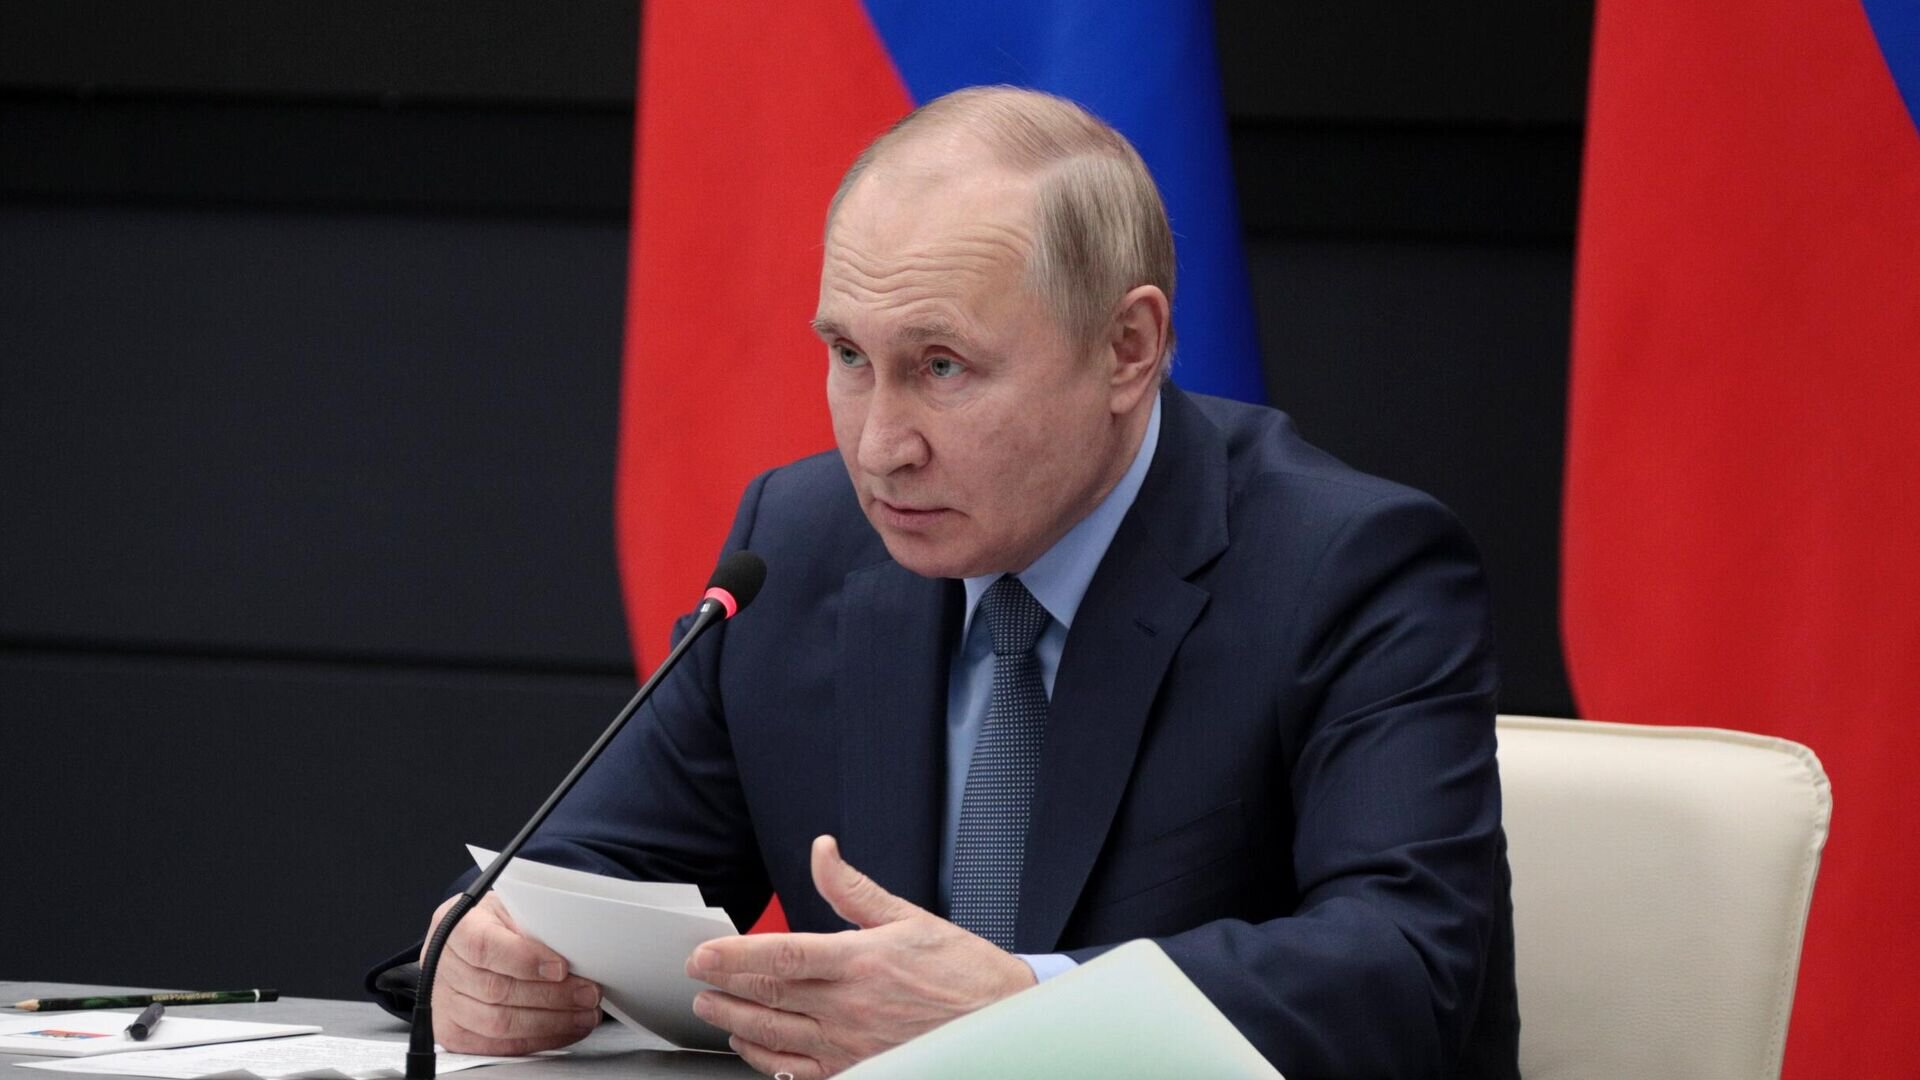 Губернатор Нижегородской области  Путину: При вашей поддержке начали строительство ледового дворца, за что огромное спасибо. Думаю, будем полностью е